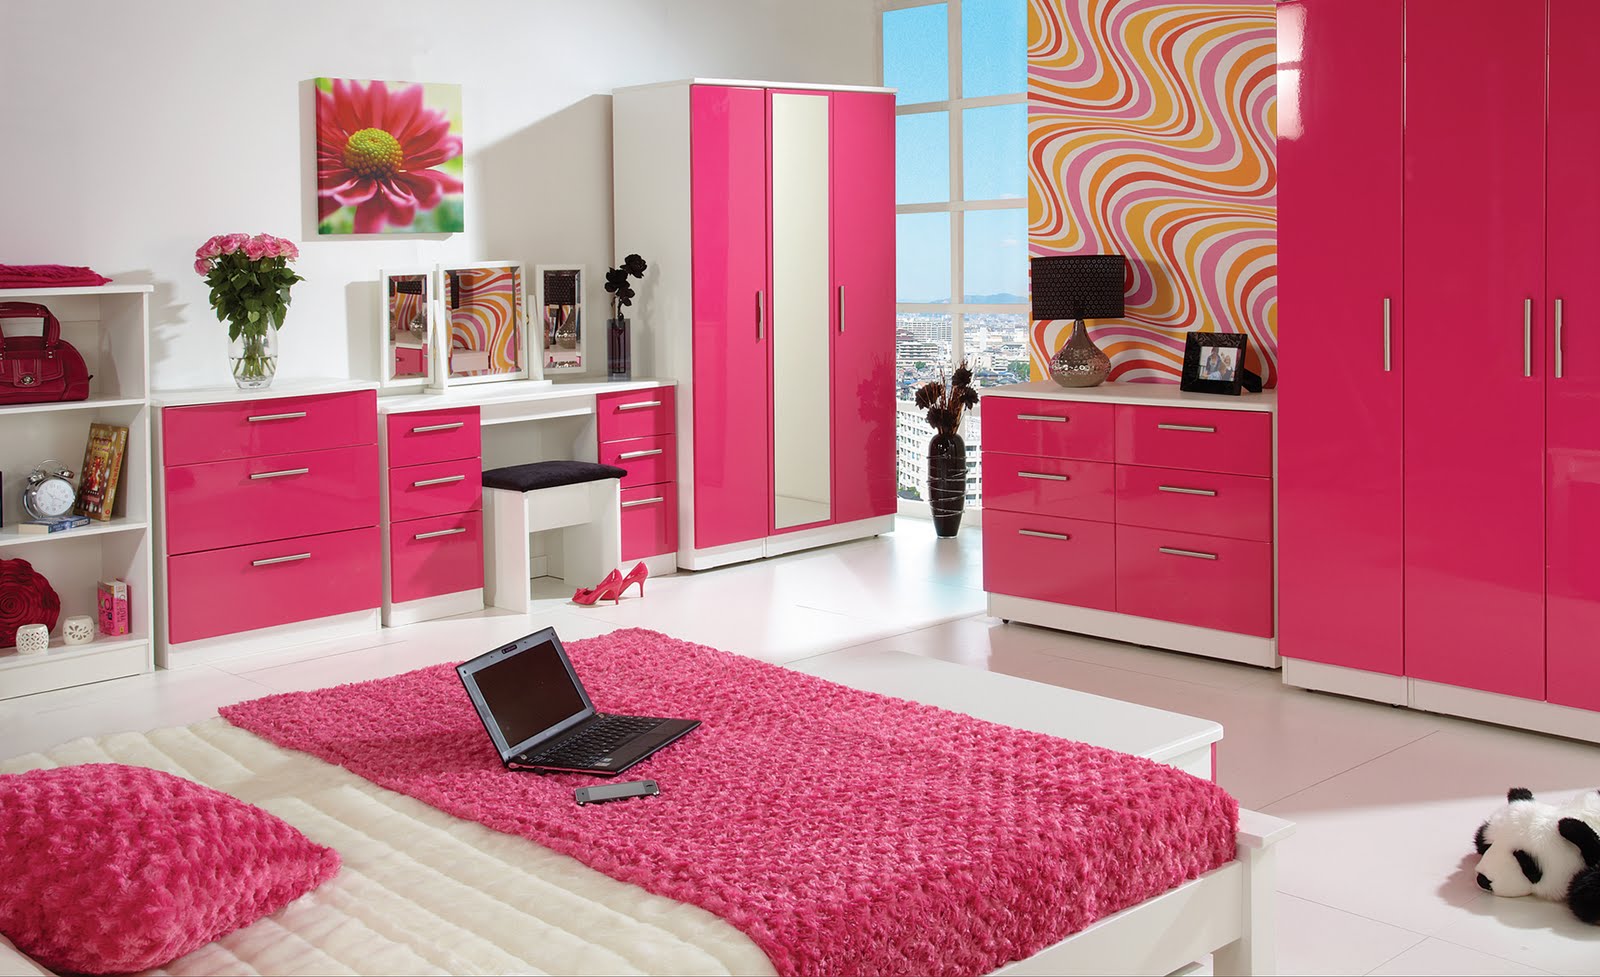 70 Desain Rumah Minimalis Warna Pink Desain Rumah Minimalis